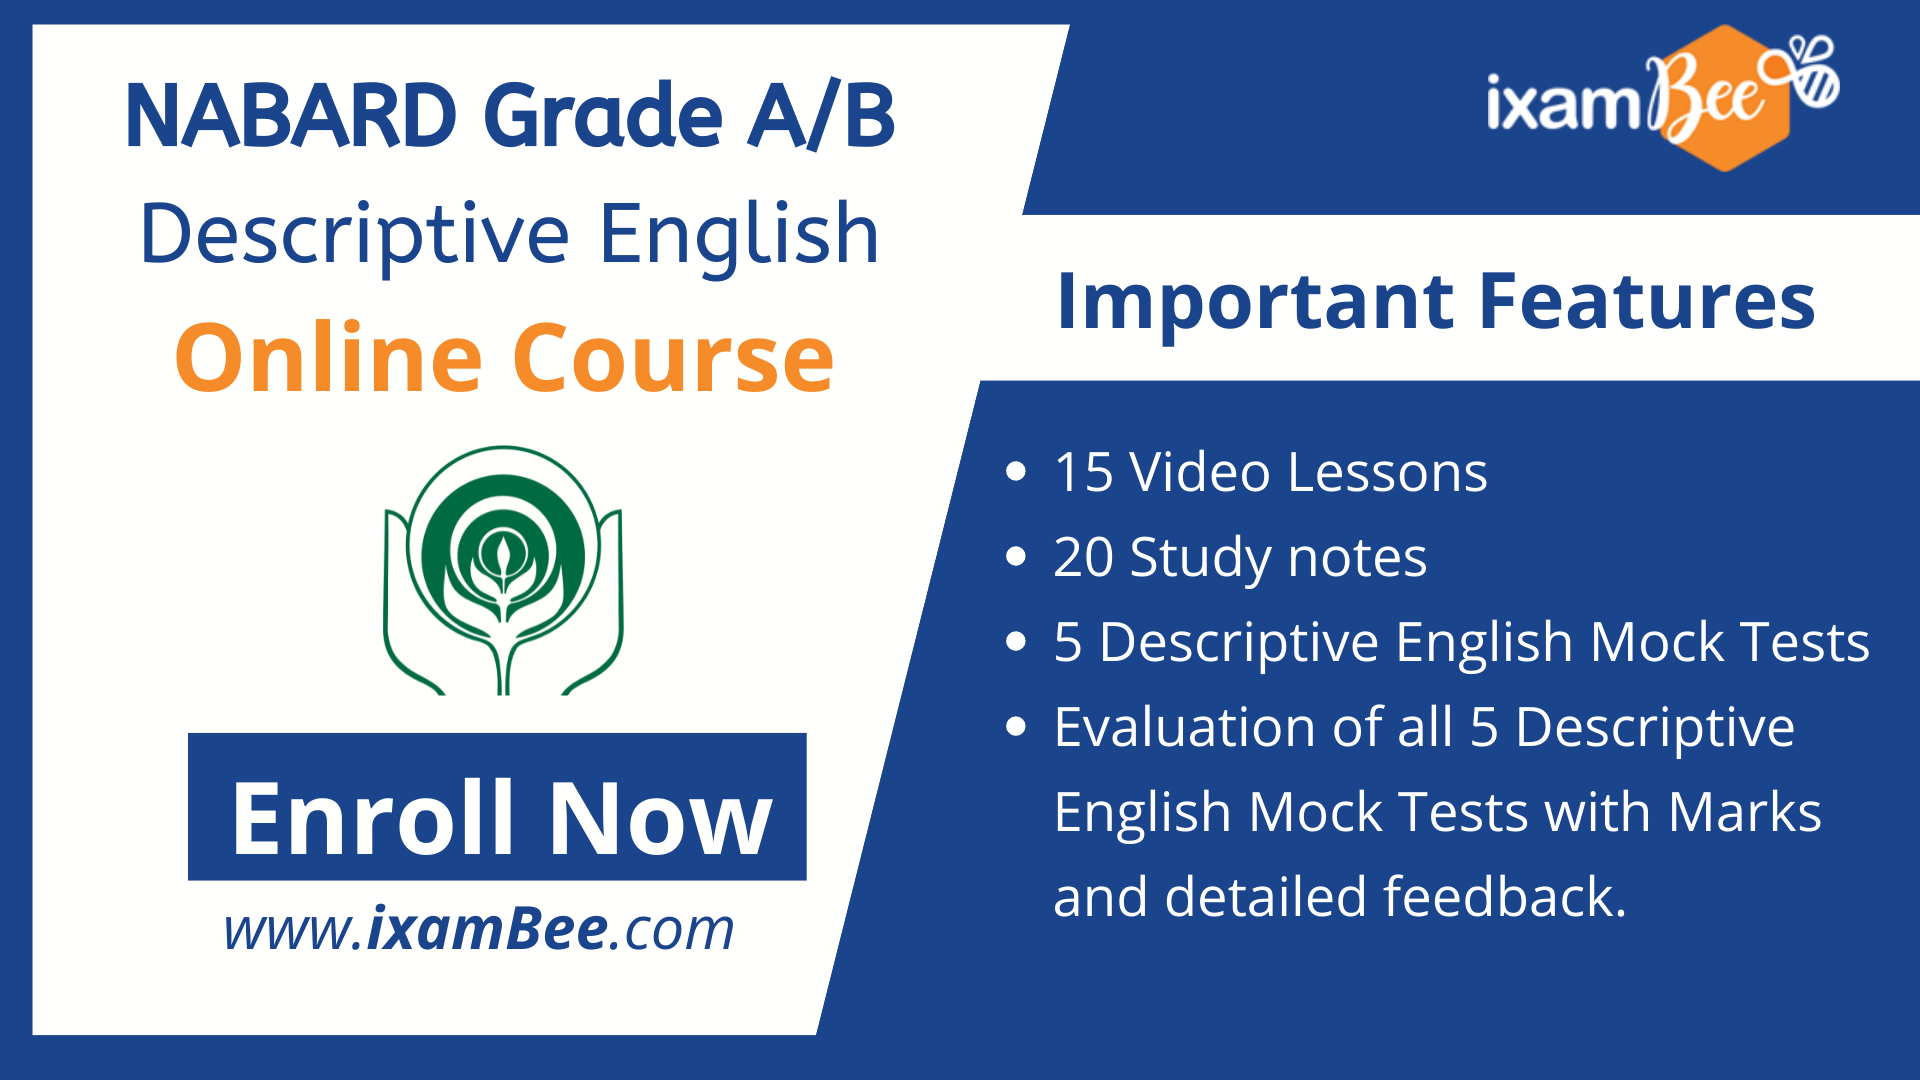 NABARD Grade A/B Descriptive English Online Course